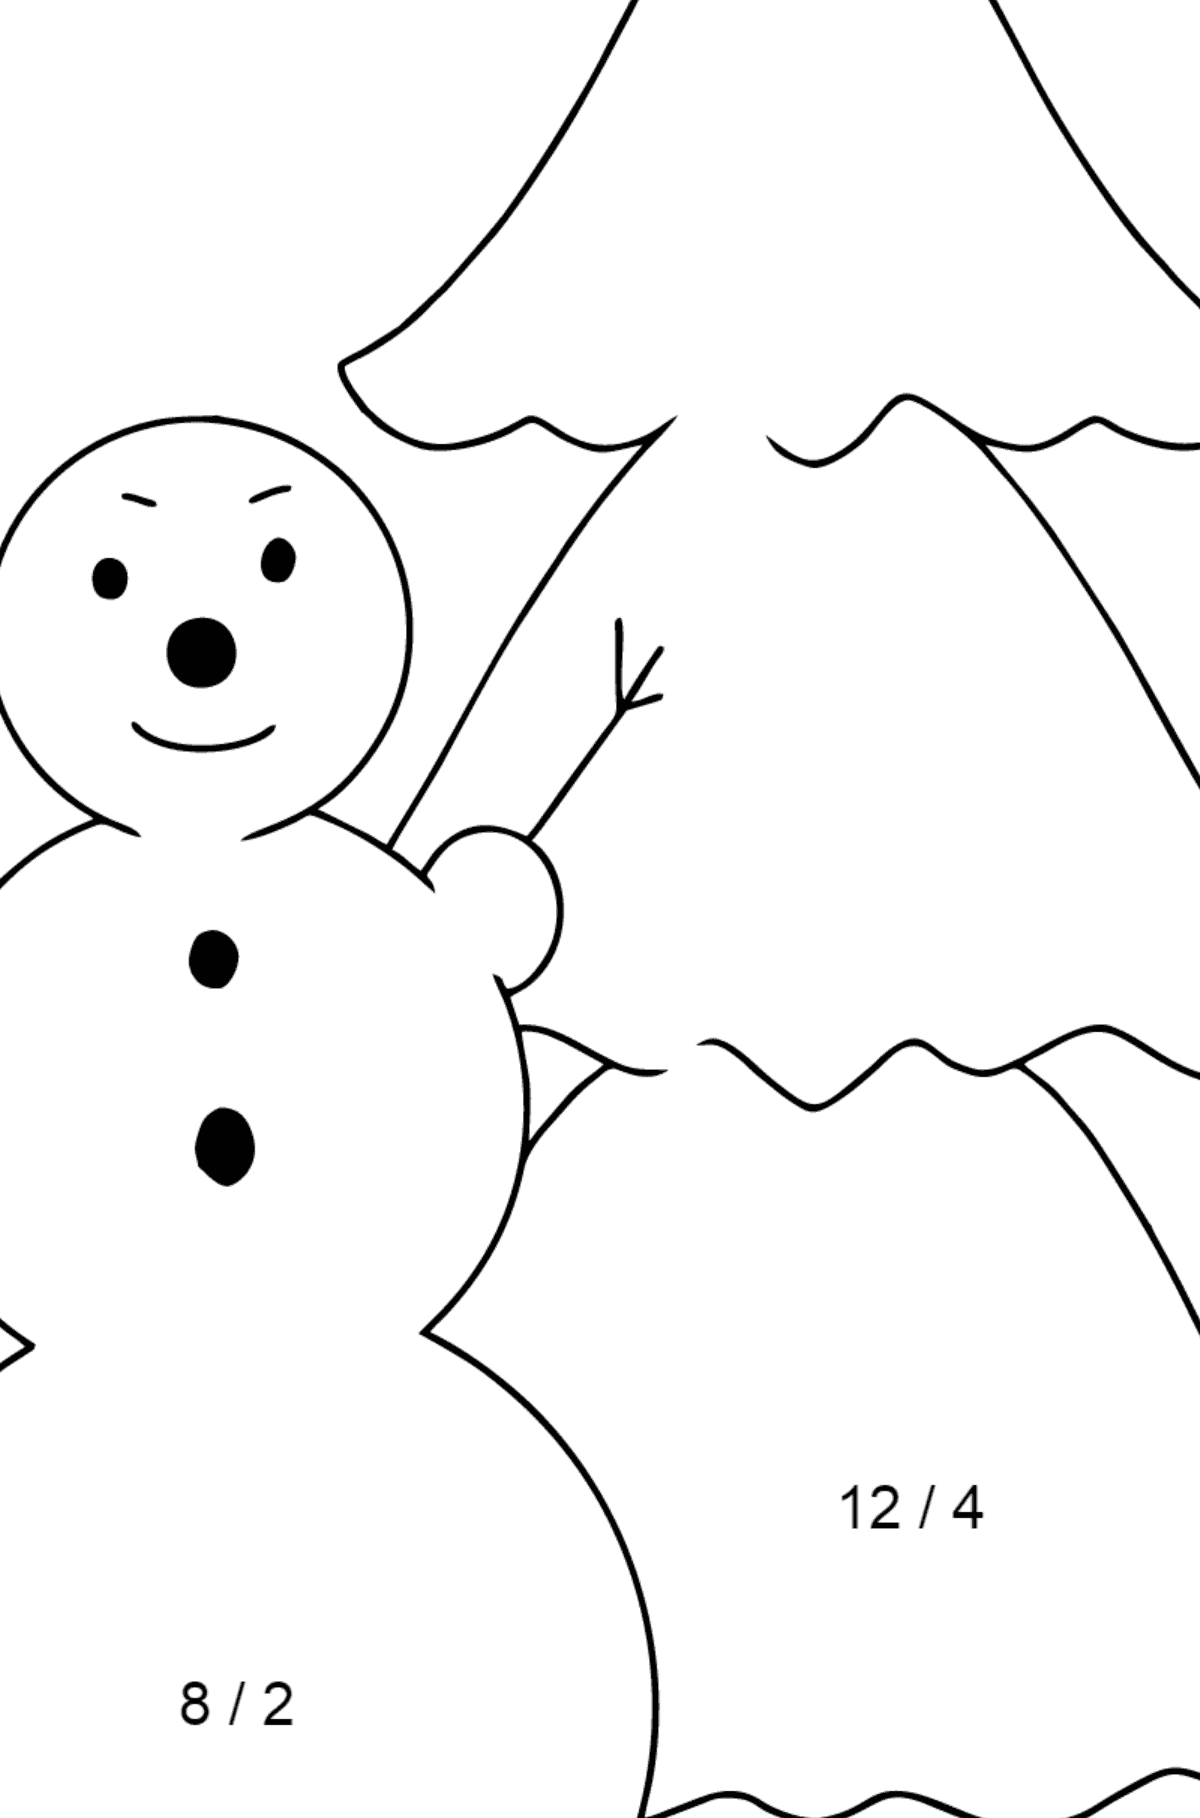 Tegning til farvning snemand og træ (let) - Matematisk farvelægning side -- Division for børn